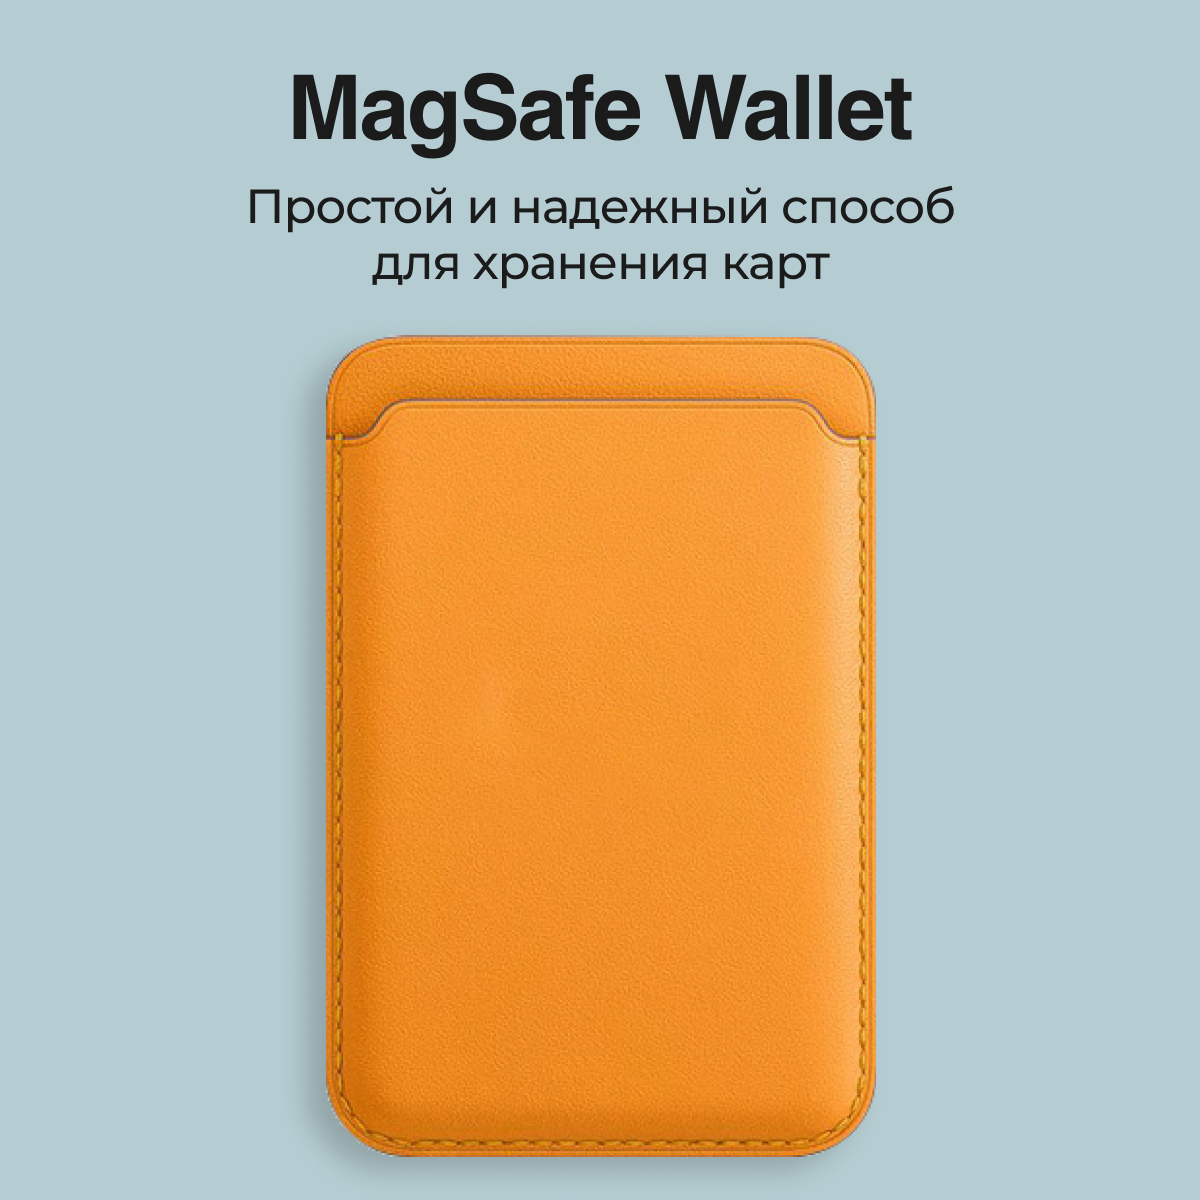 Картхолдер Magsafe Wallet для iPhone оранжевый. Визитница на айфон магсейф